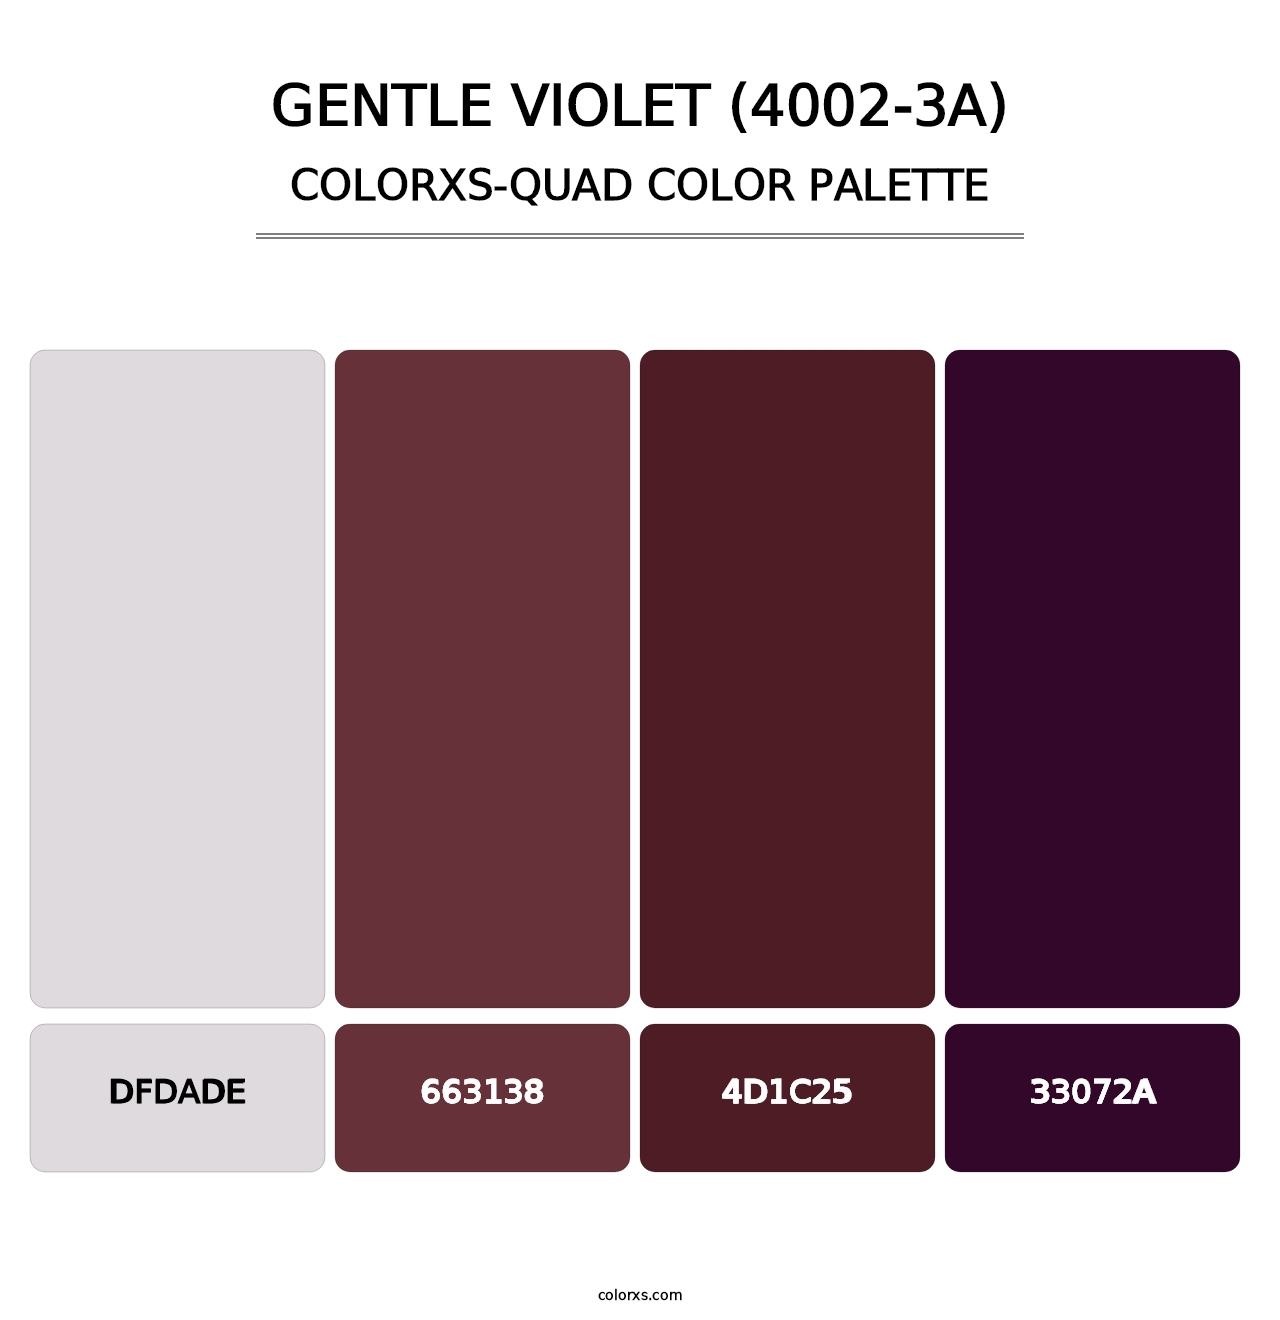 Gentle Violet (4002-3A) - Colorxs Quad Palette